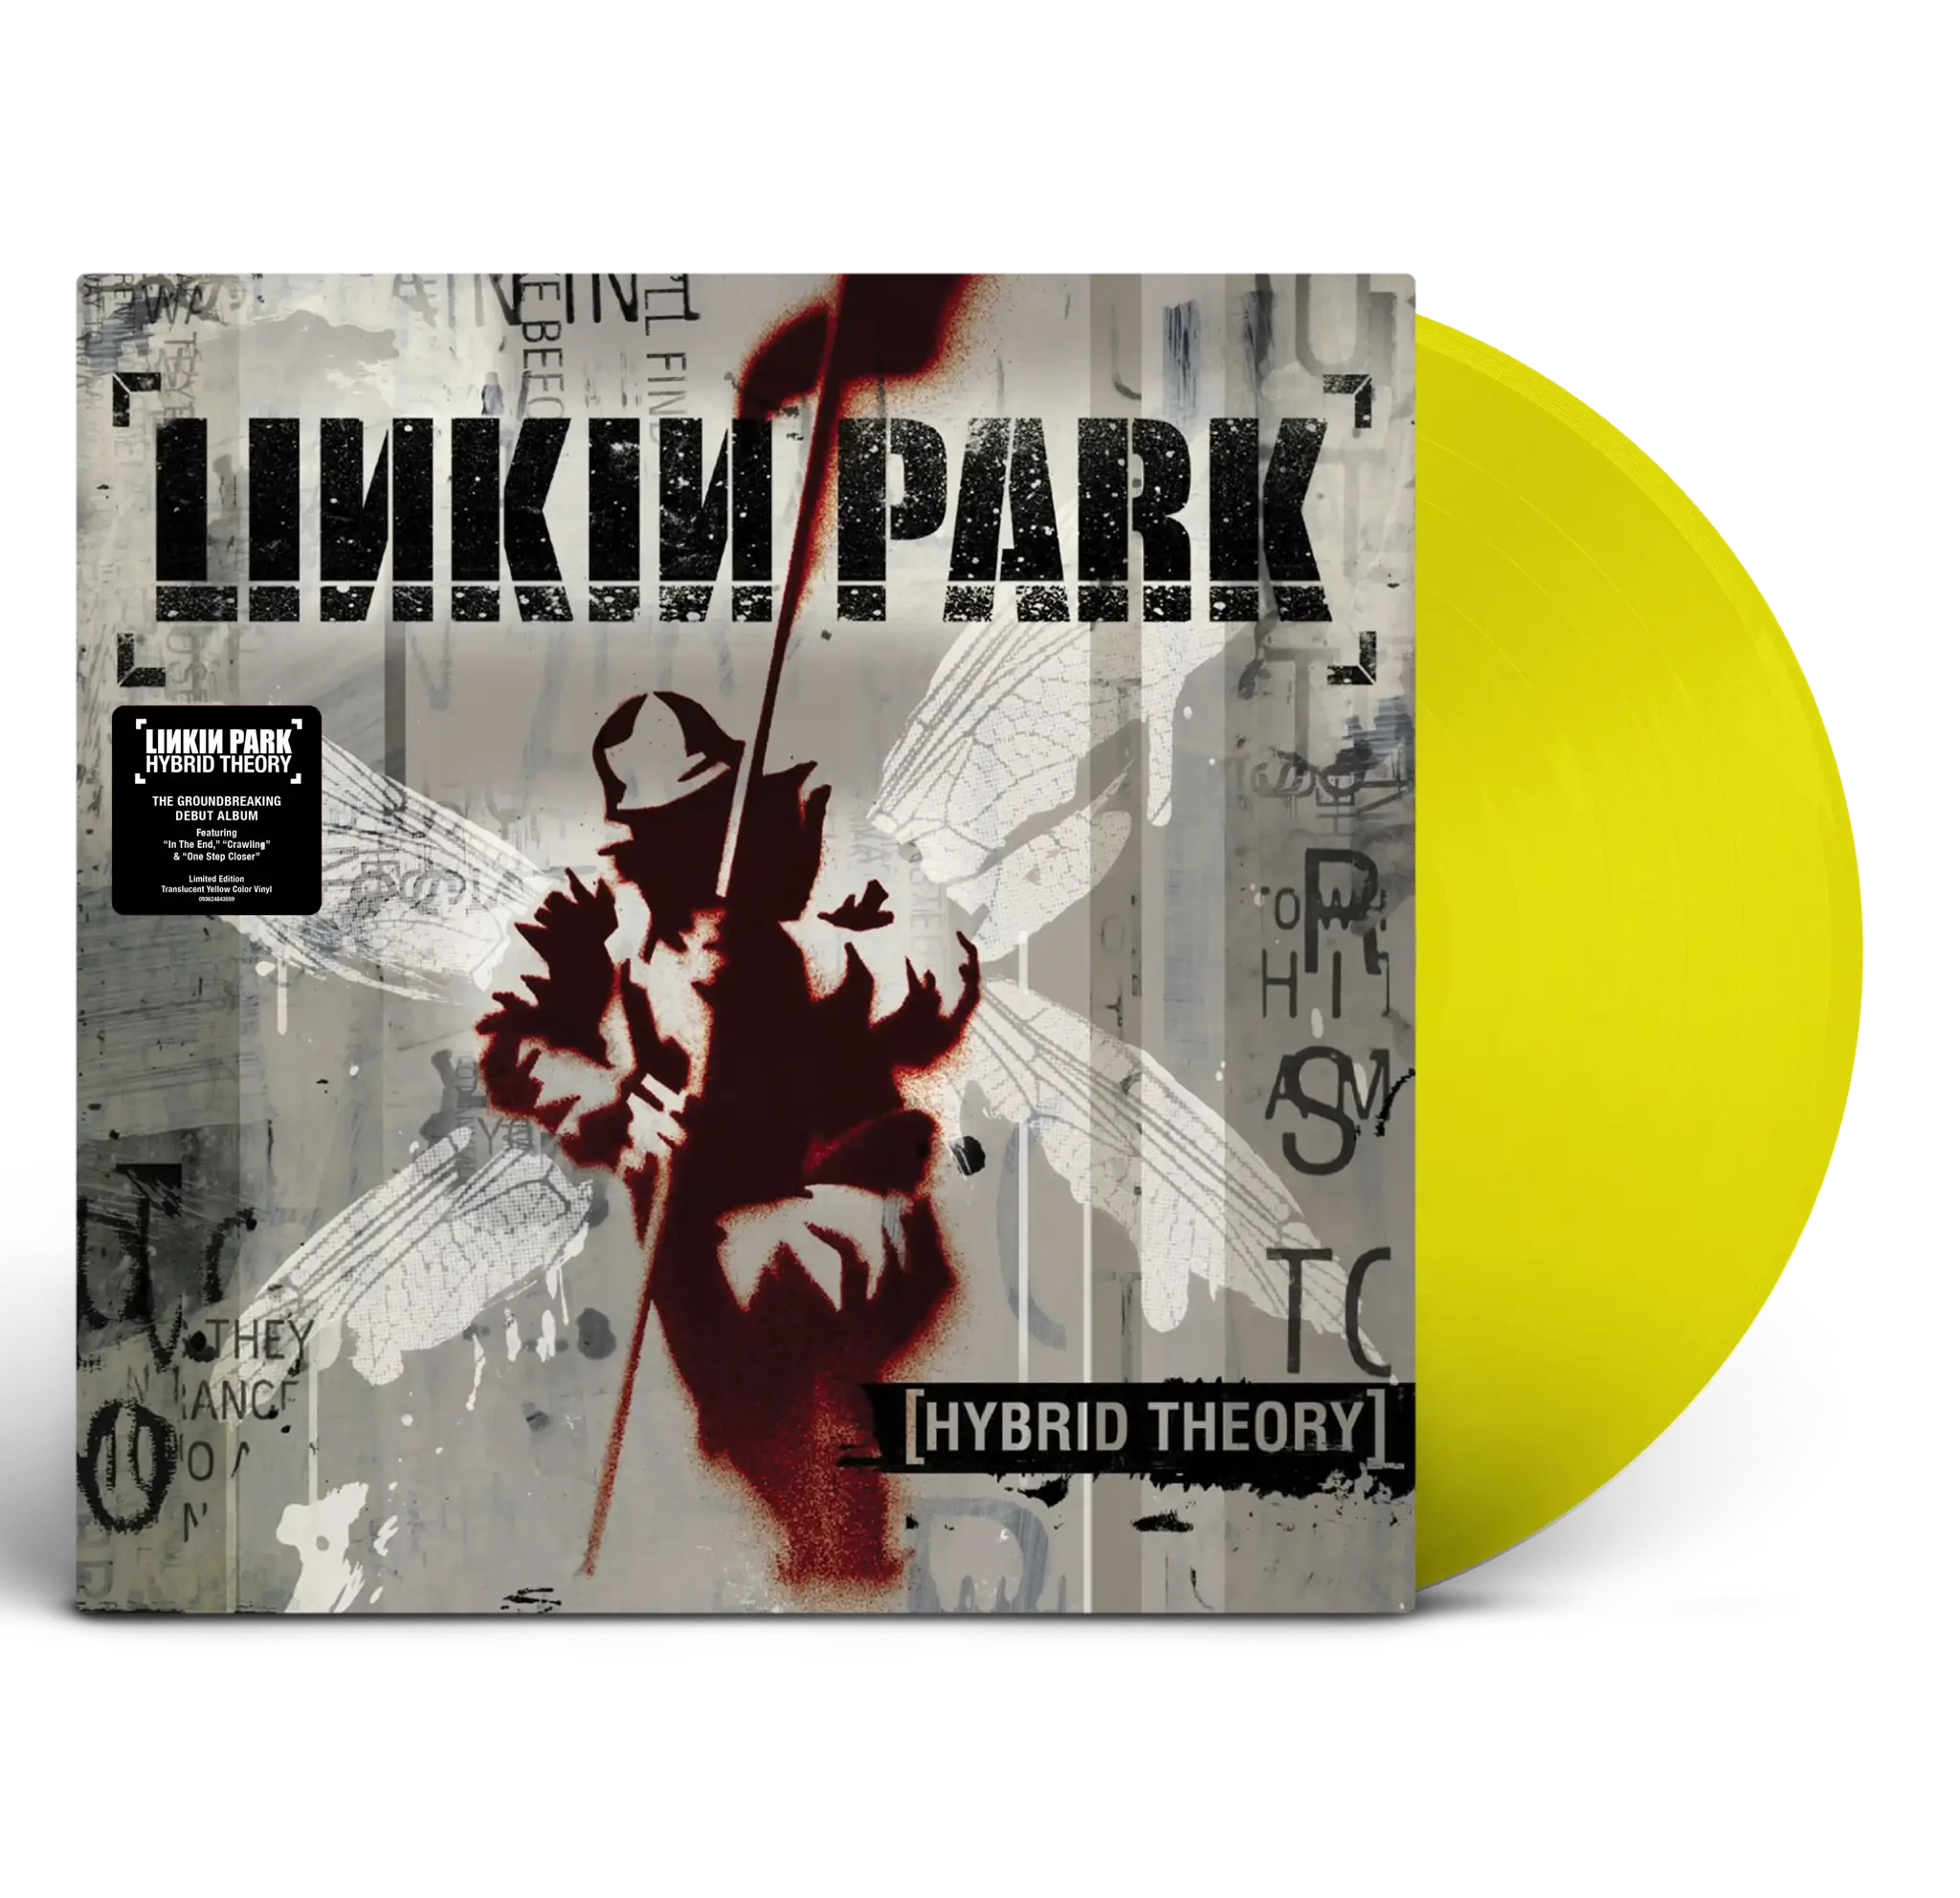 Album artwork for Album artwork for Hybrid Theory by Linkin Park by Hybrid Theory - Linkin Park